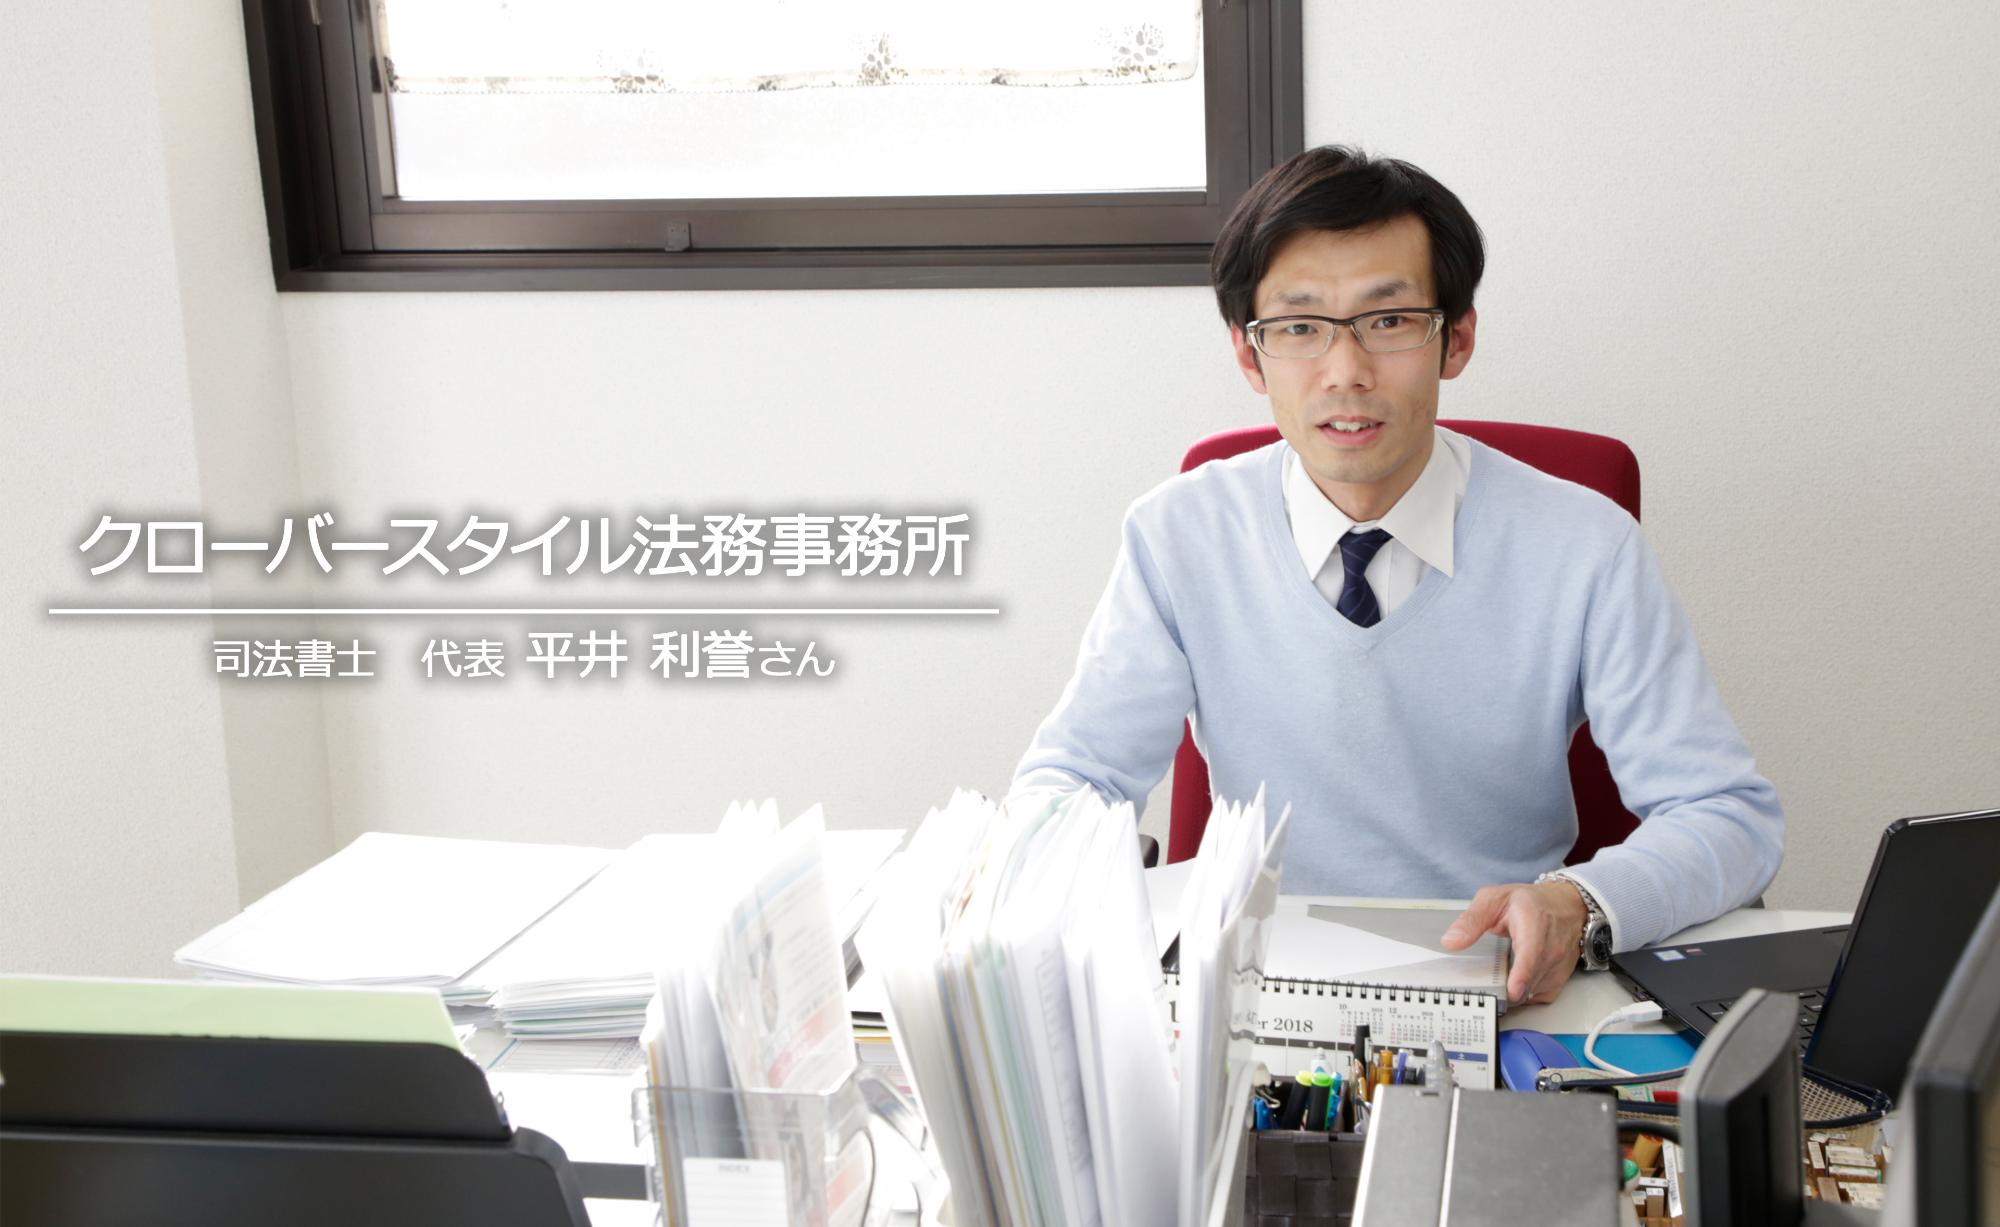 事務所のデスク前に座って仕事をしている、クローバースタイルの代表、司法書士の平井誉士さんを写した写真。